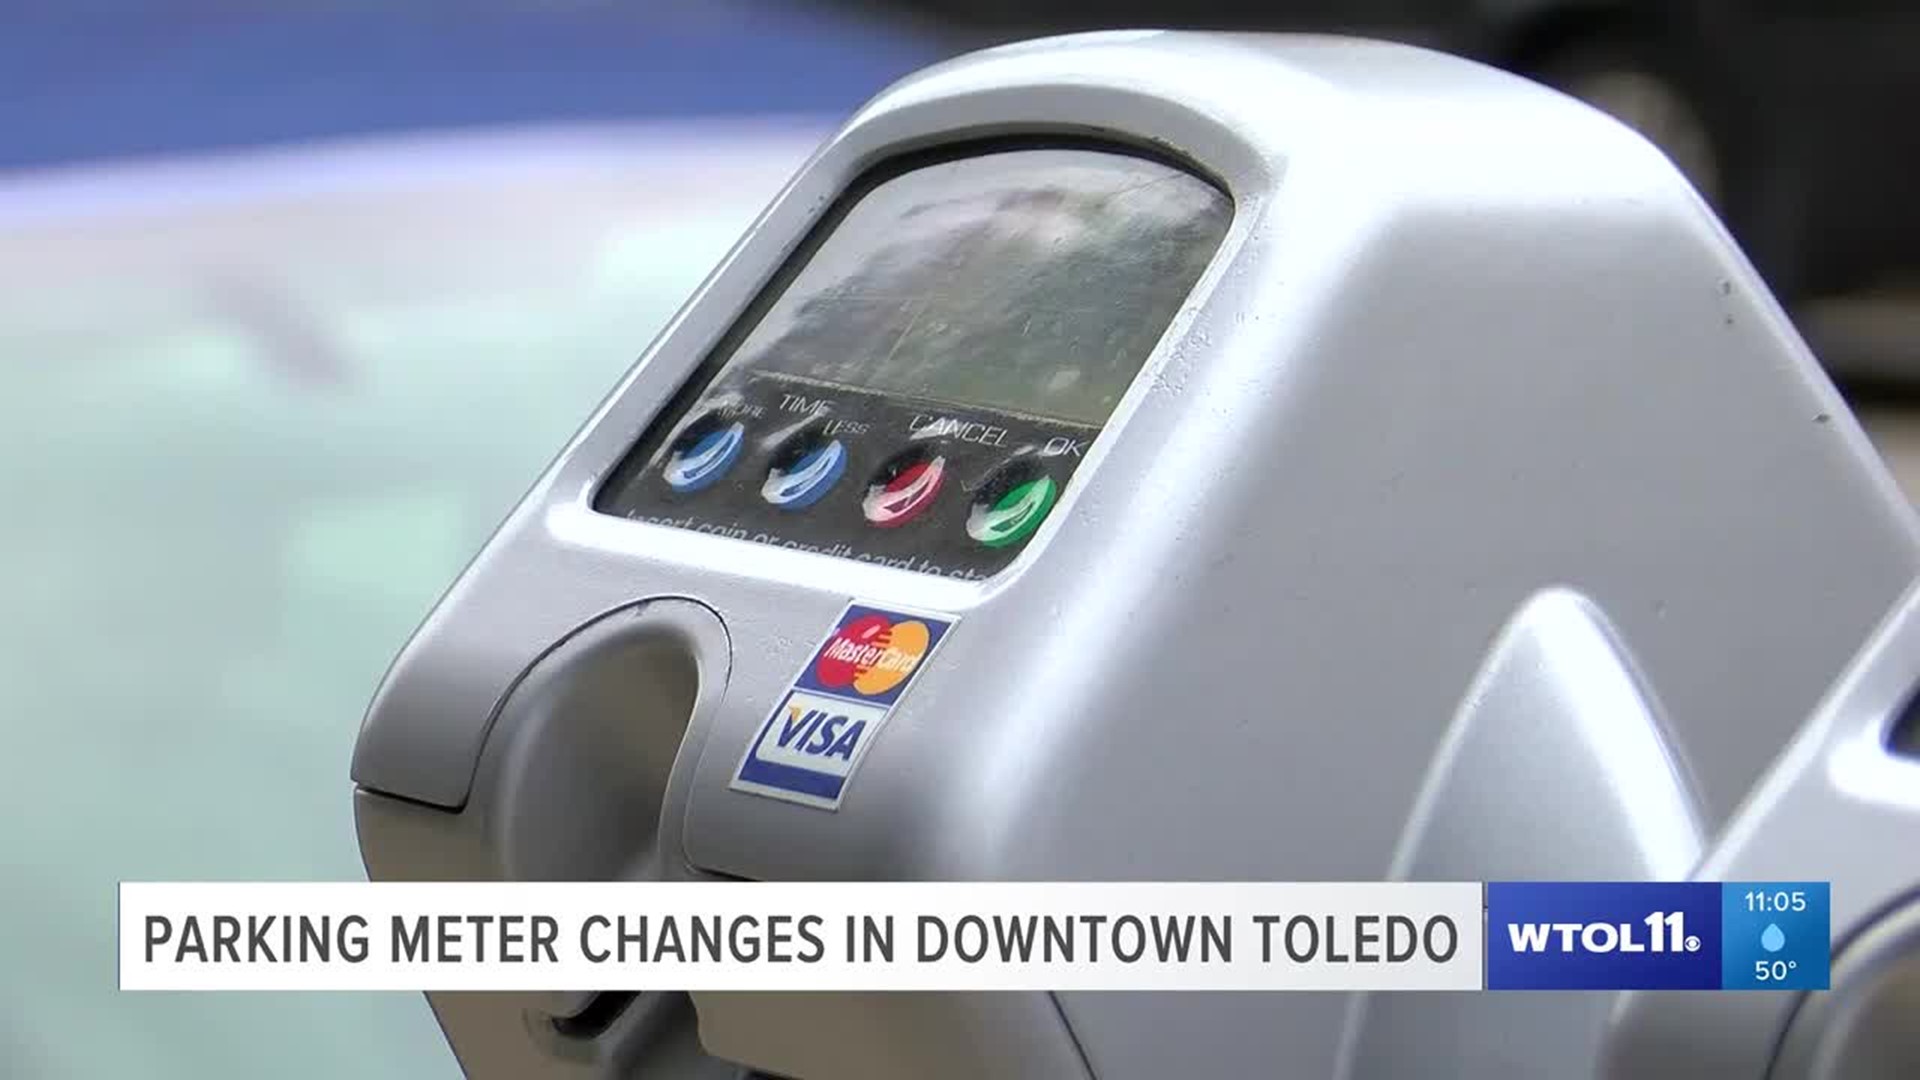 Parking meter changes in downtown Toledo